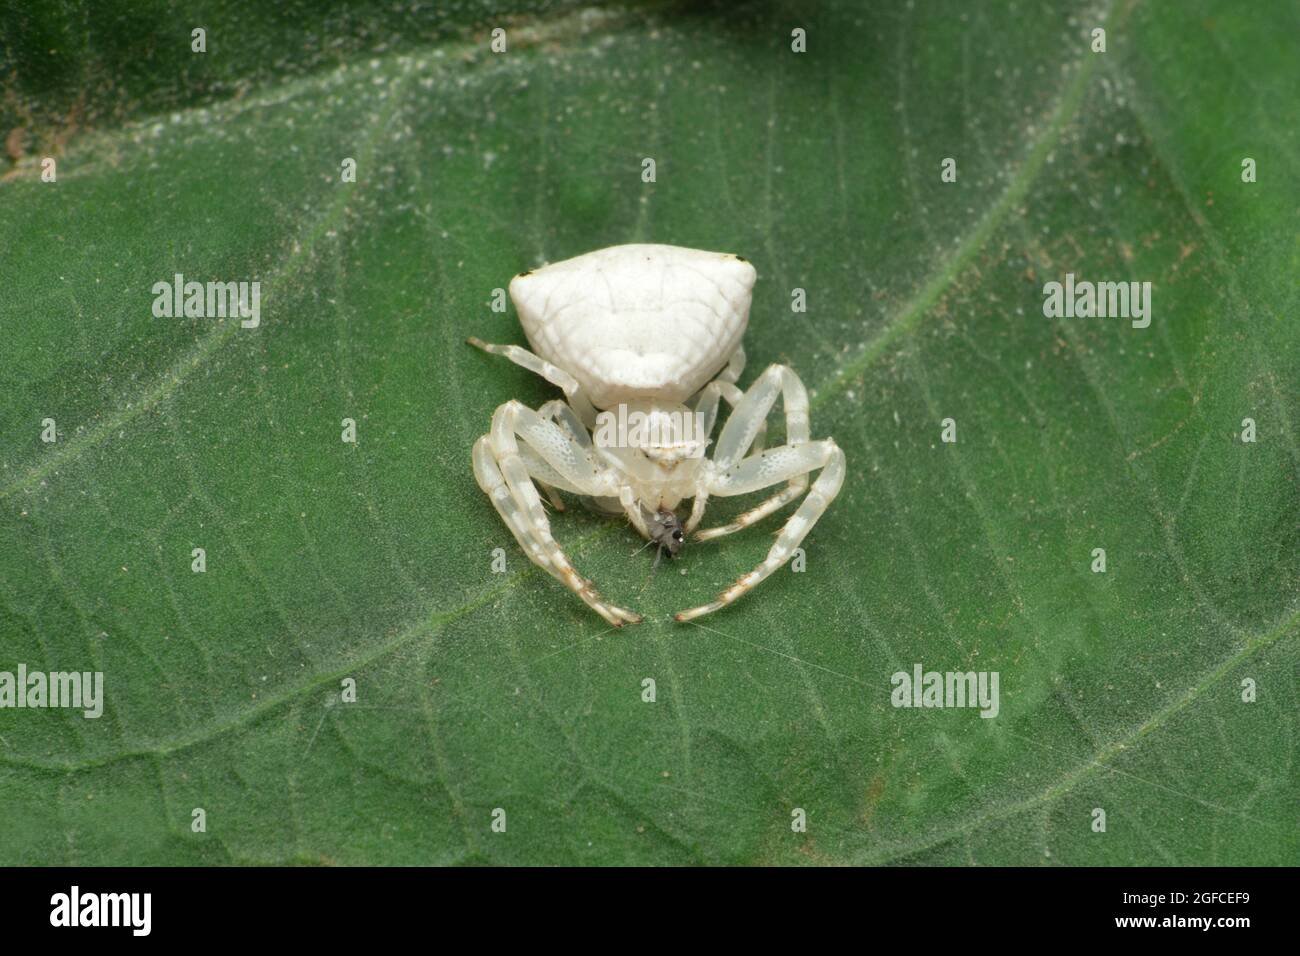 Thomisus spectabilis, also known as the white crab spider or Australian crab spider, Satara, Maharashtra, India Stock Photo